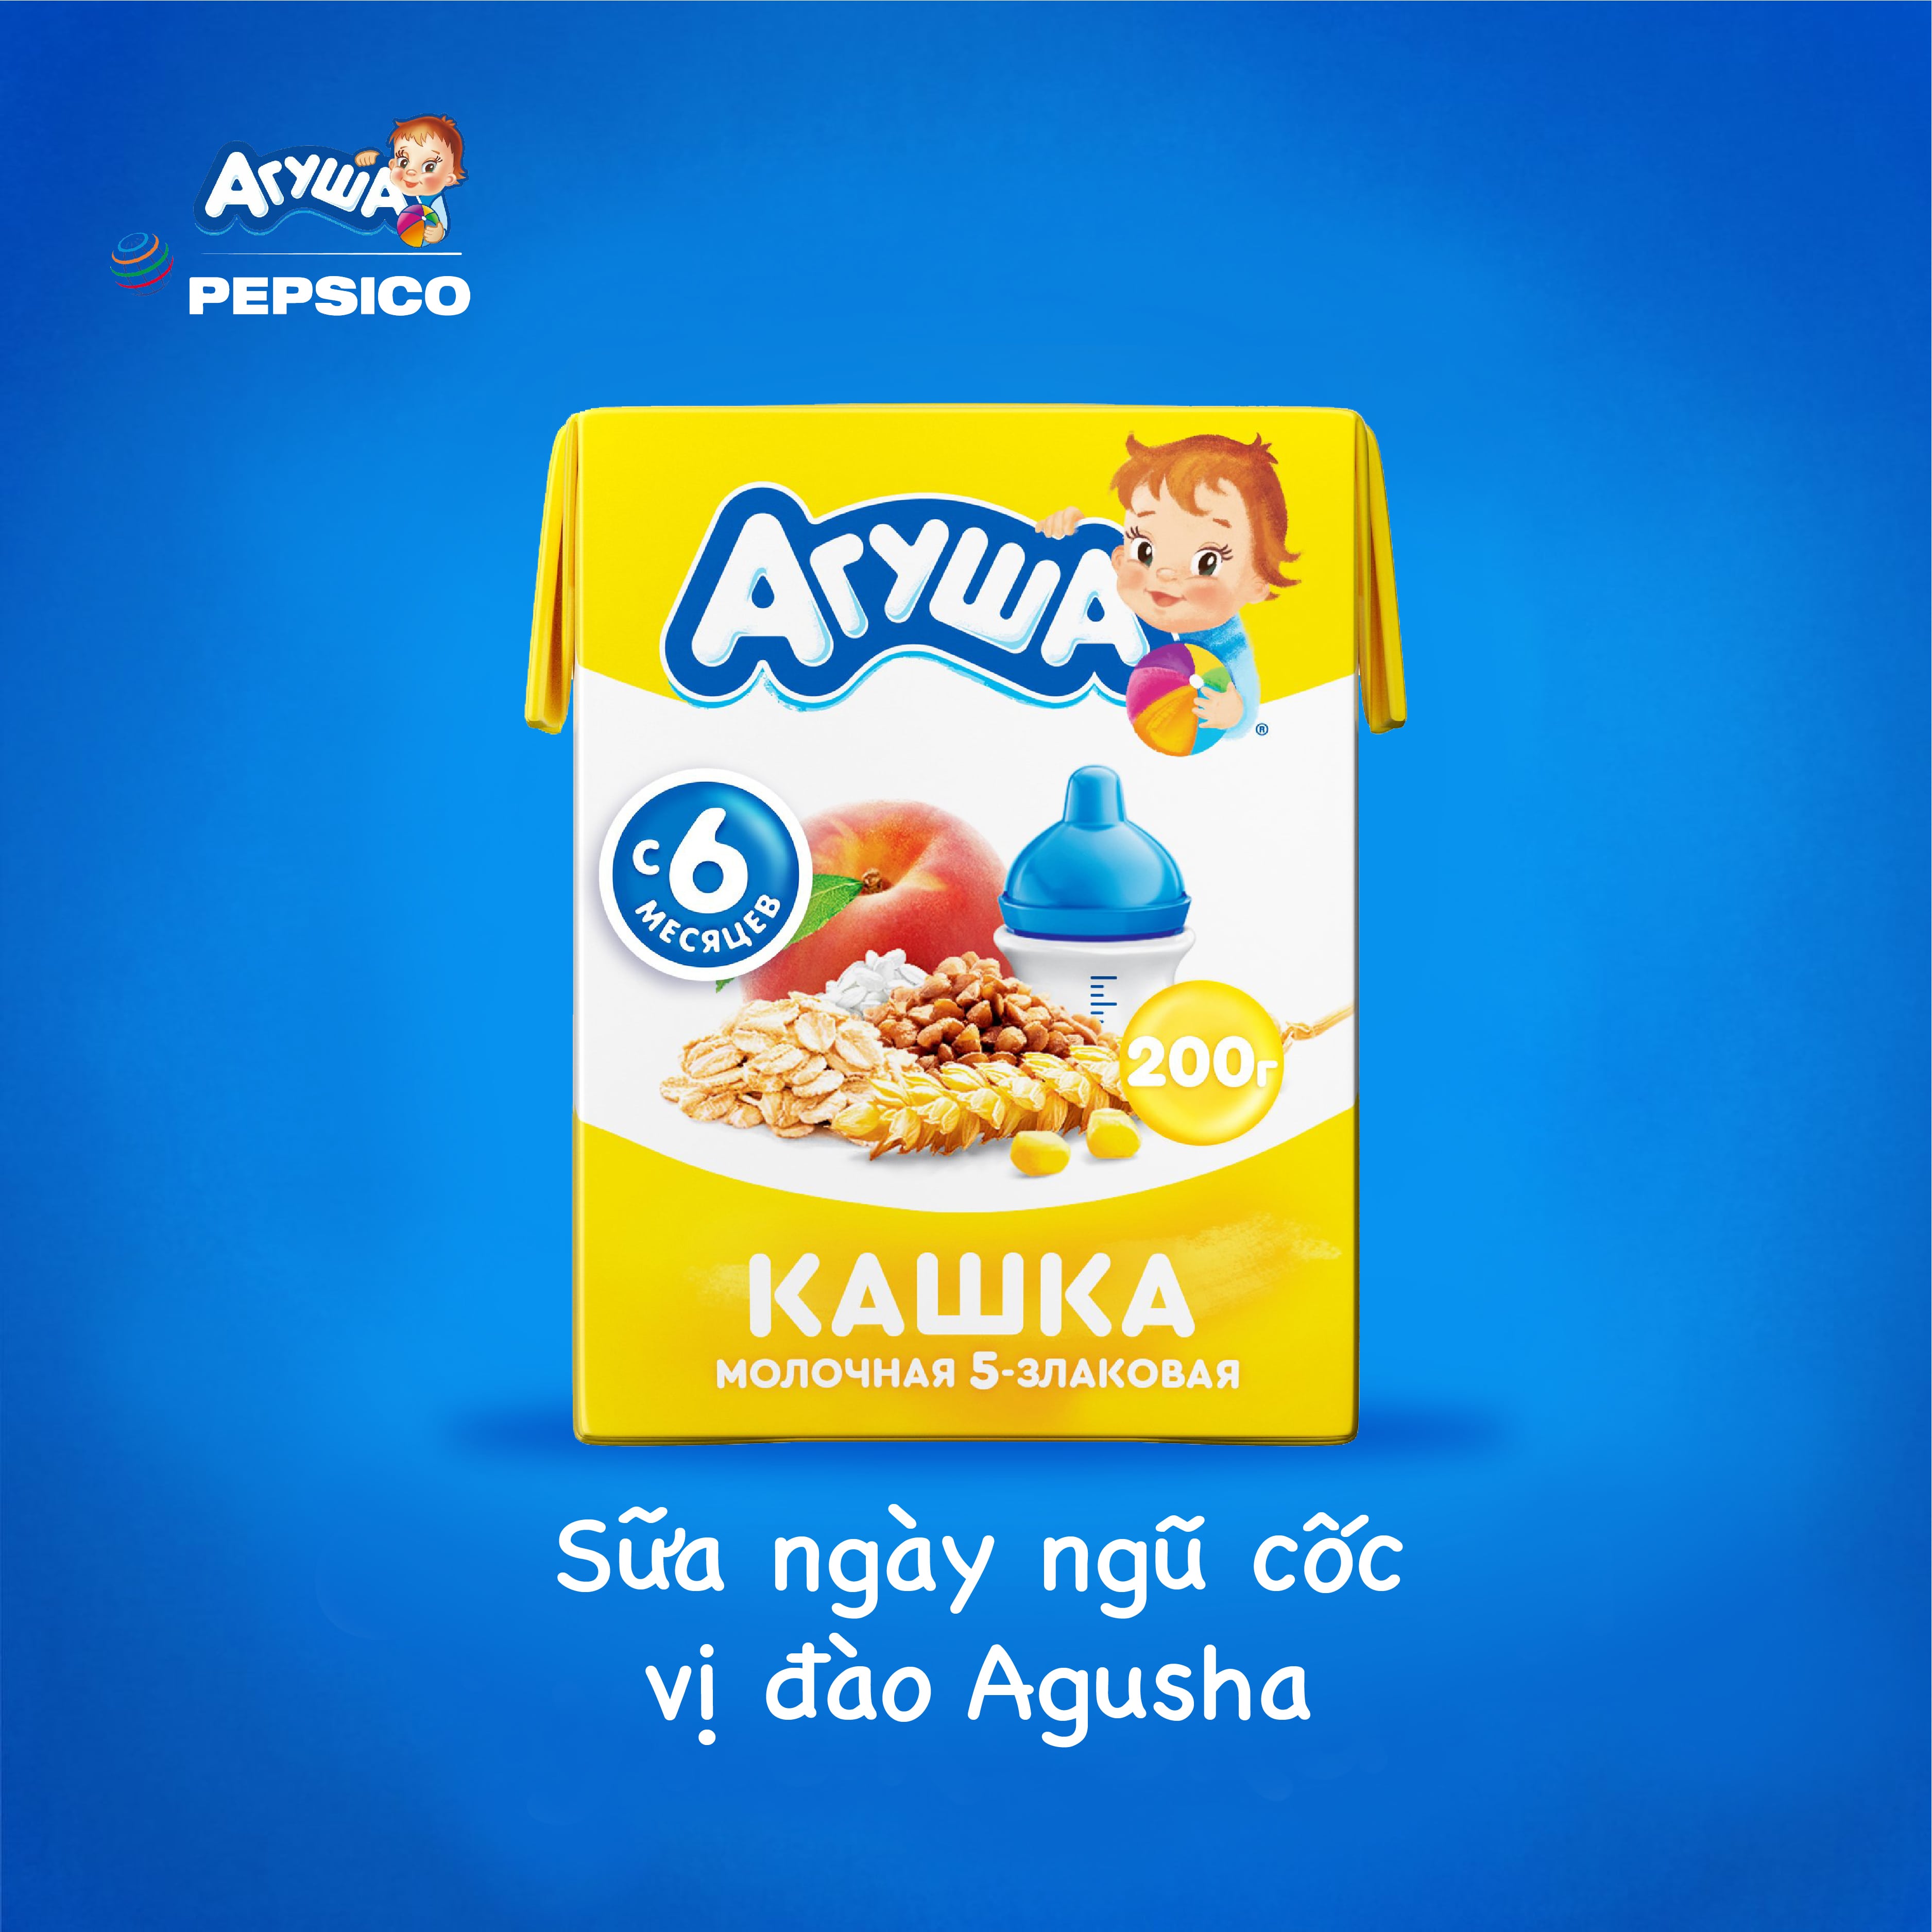 Combo 20 hộp Sữa ngày ngũ cốc vị đào Agusha 200ml/hộp